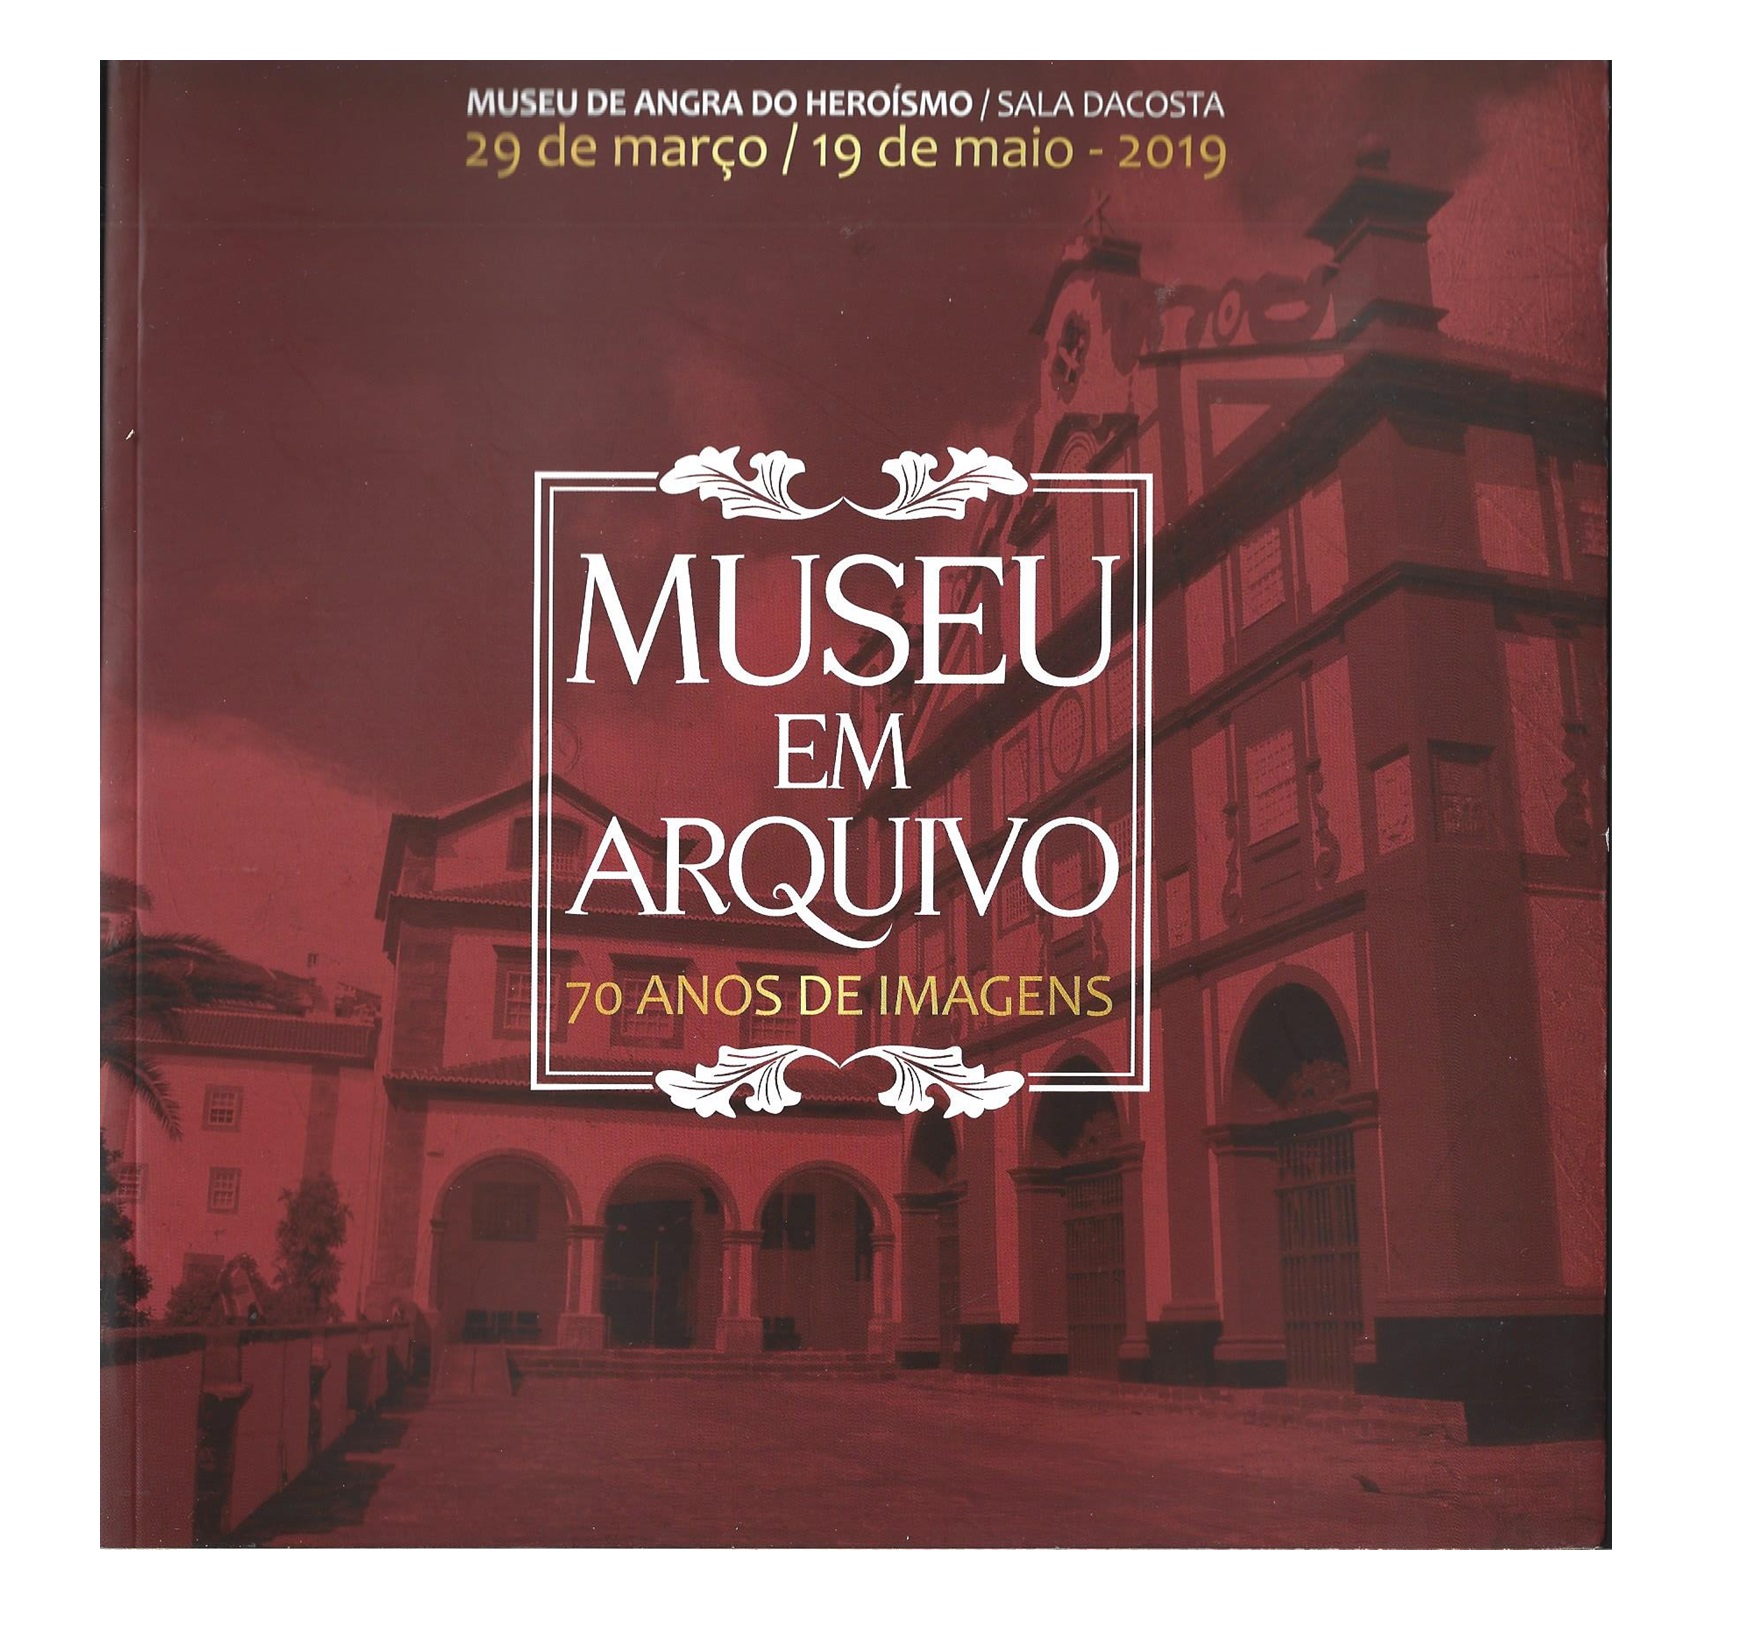 MUSEU EM ARQUIVO: 70 ANOS DE IMAGENS